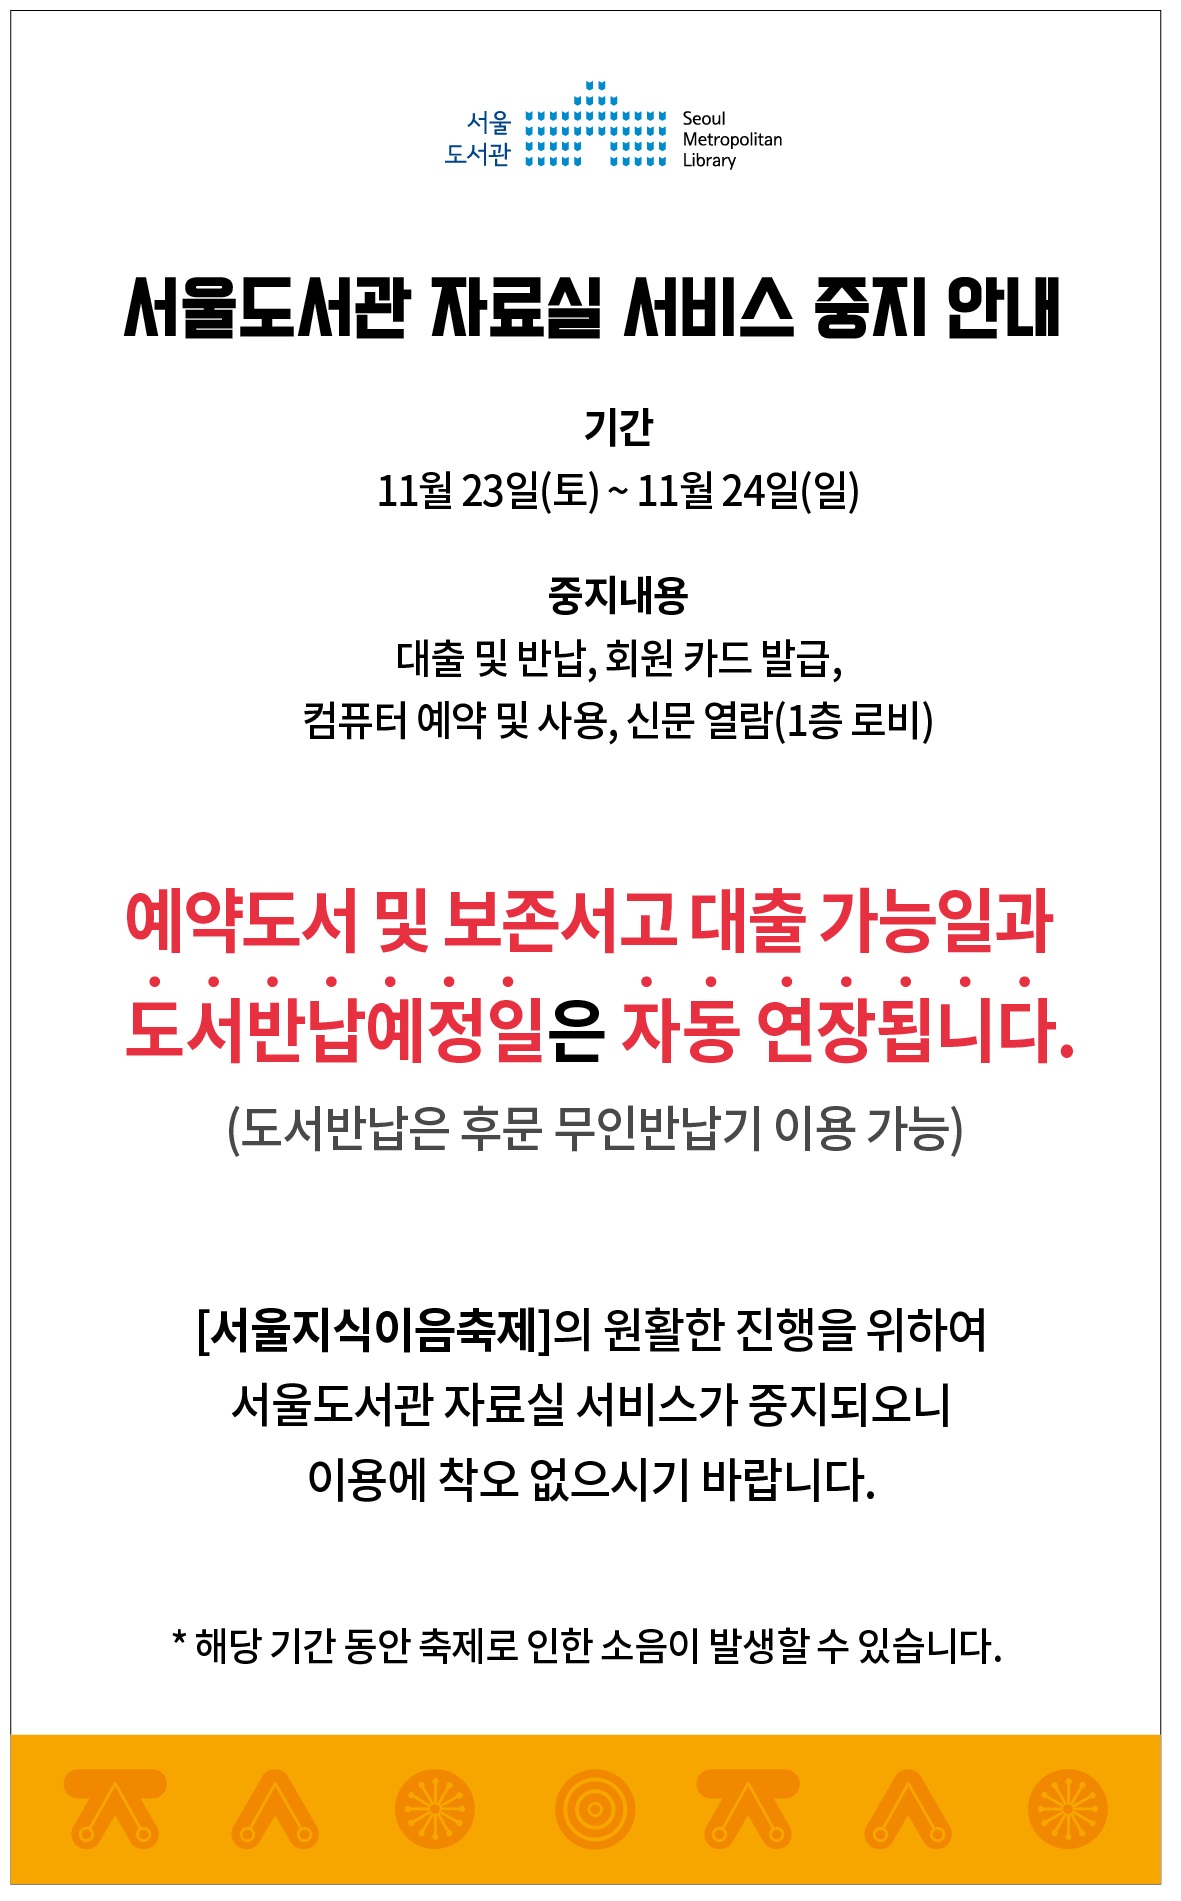 서울도서관 휴관(11.23-24)